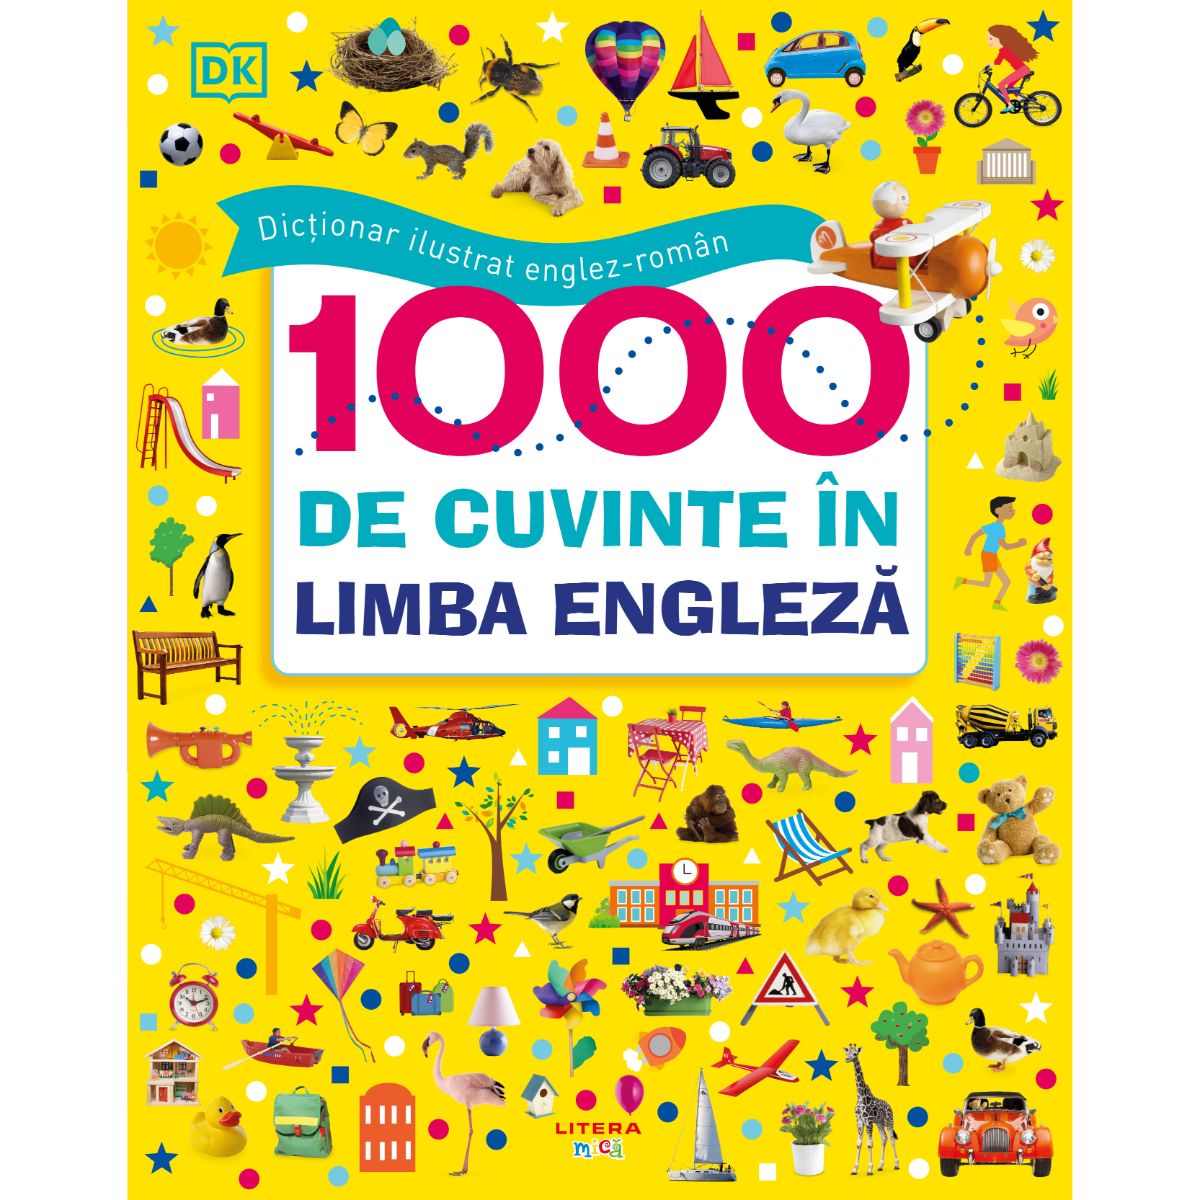 Dictionar ilustrat englez-roman, 1000 de cuvinte in limba engleza Carti pentru copii 2023-09-26